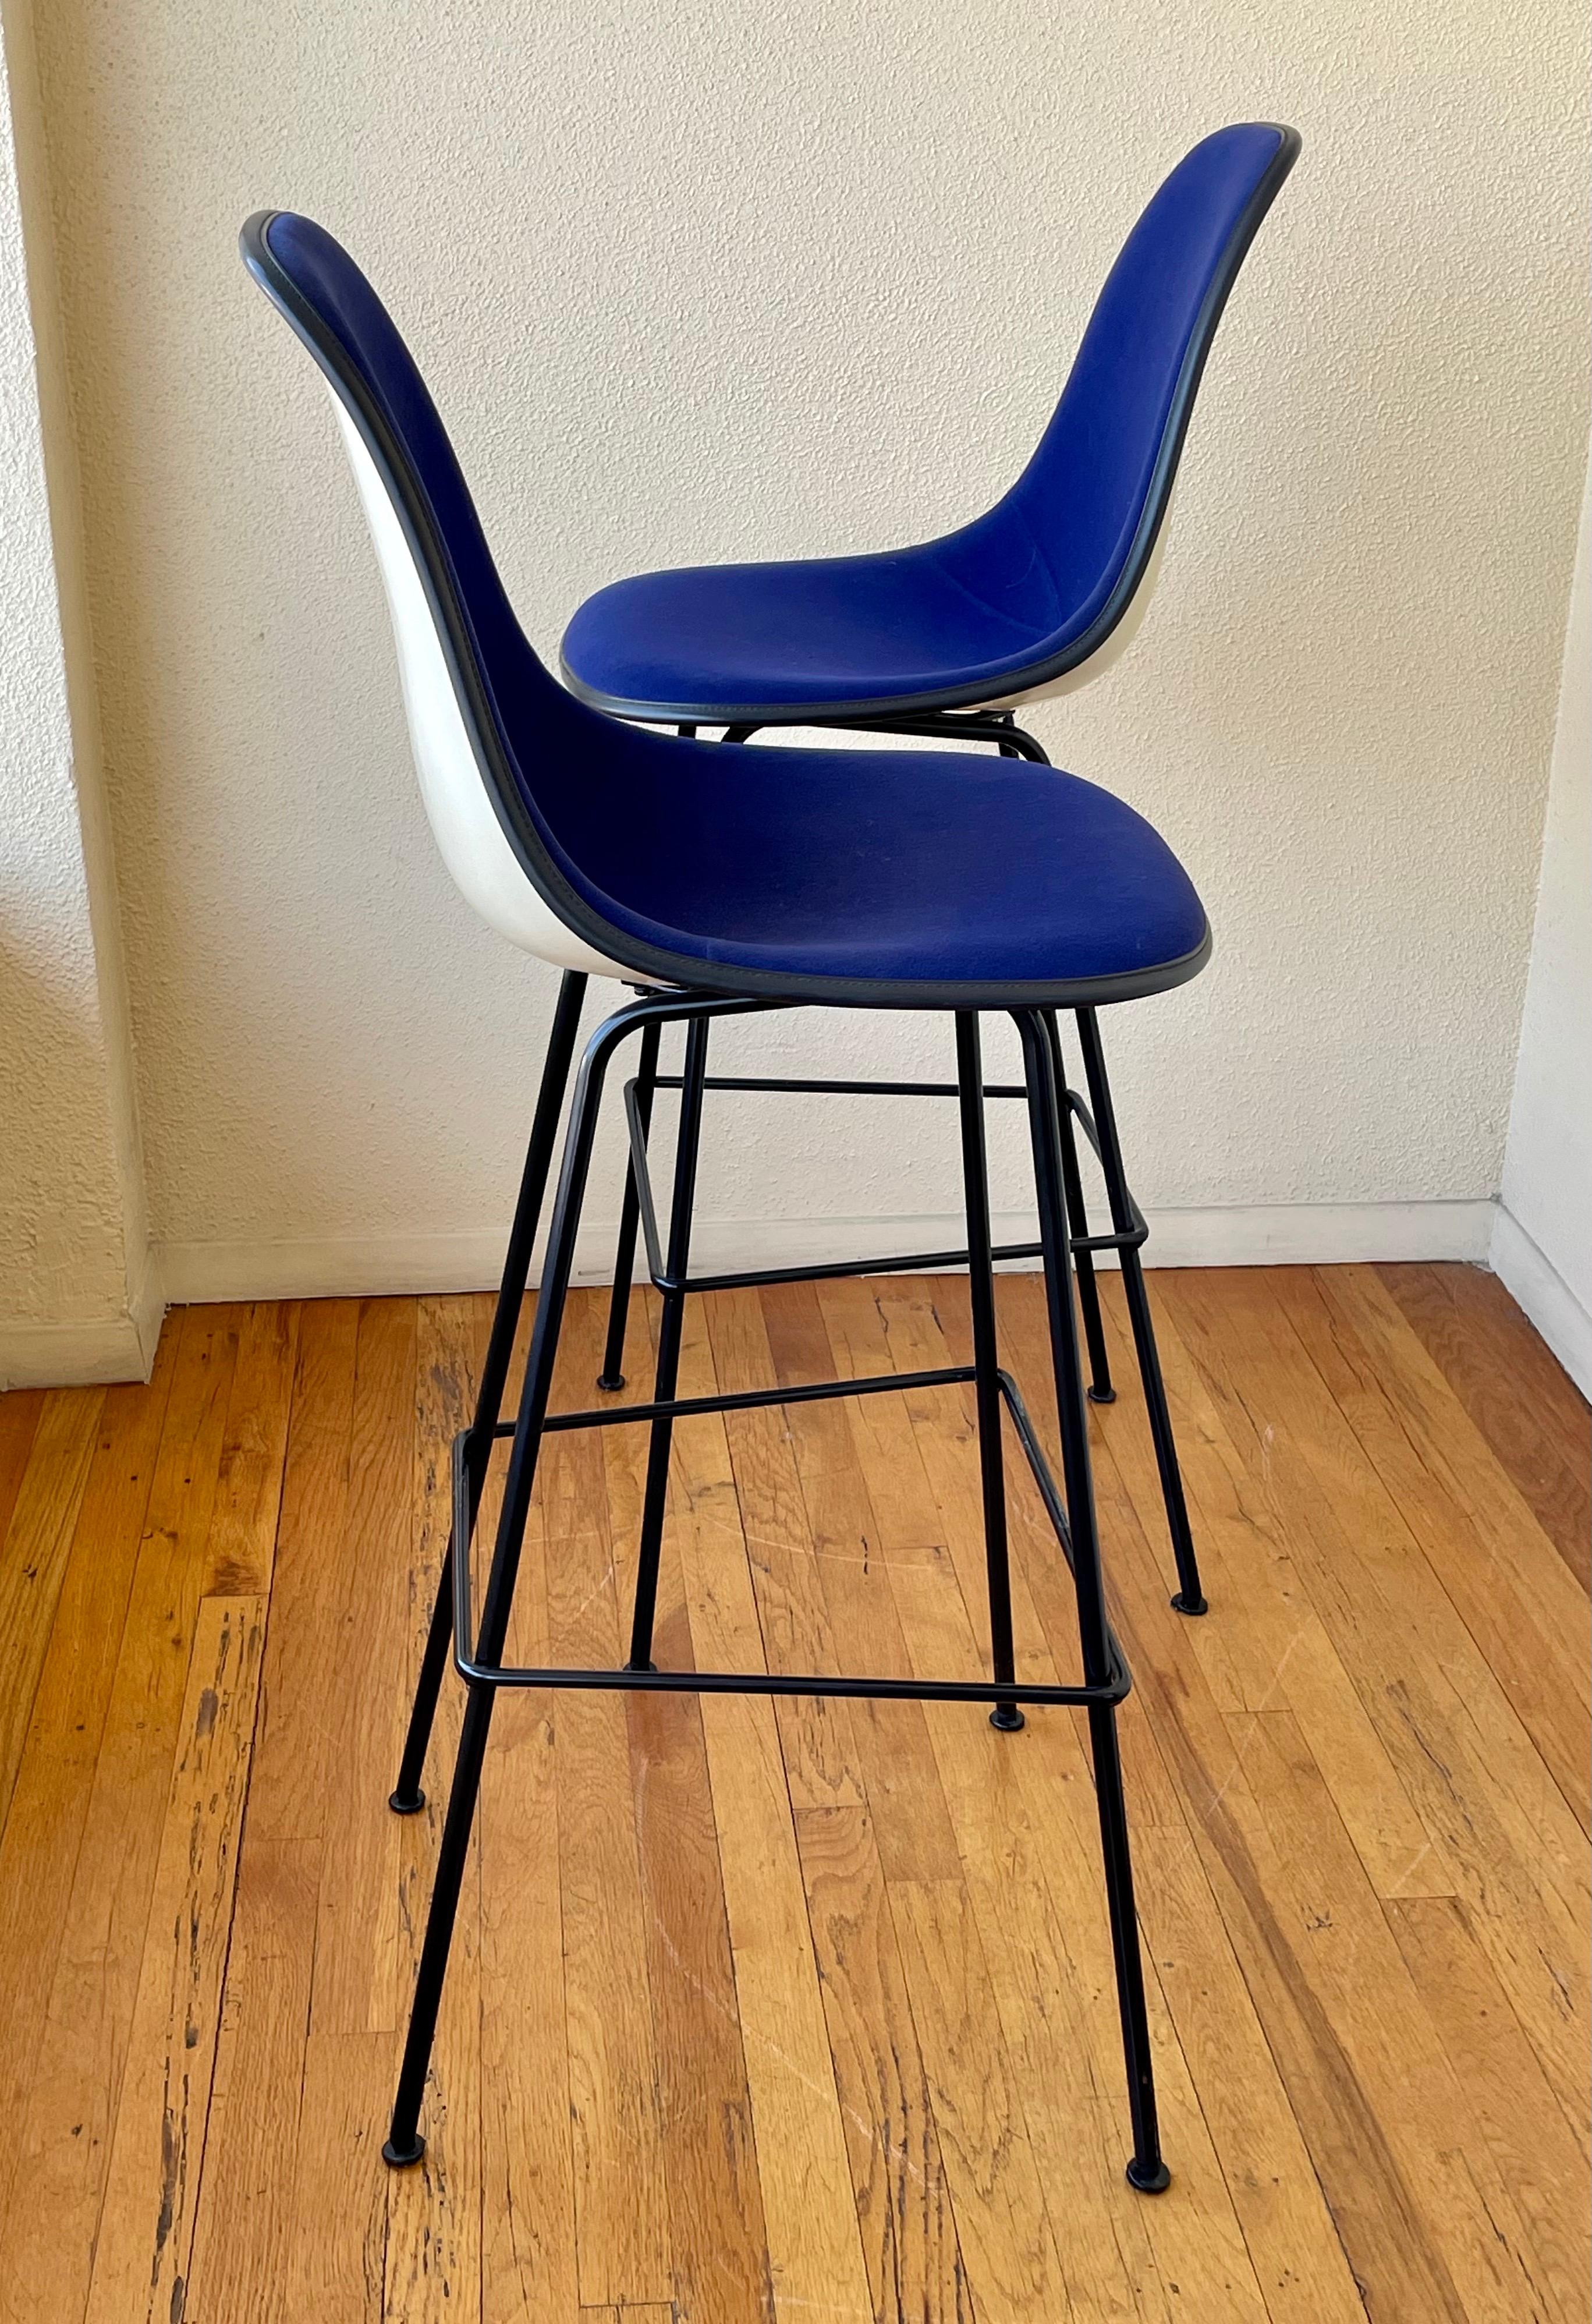 Nizza Paar seltene Barhocker von Charles Eames für Herman Miller circa 1970er Jahre entworfen, die marineblau Samt Sitzbezug zeigt leichte Abnutzung und leichte Flecken, wie auf den Bildern gezeigt, hat aber schöne Schaum insgesamt. Die